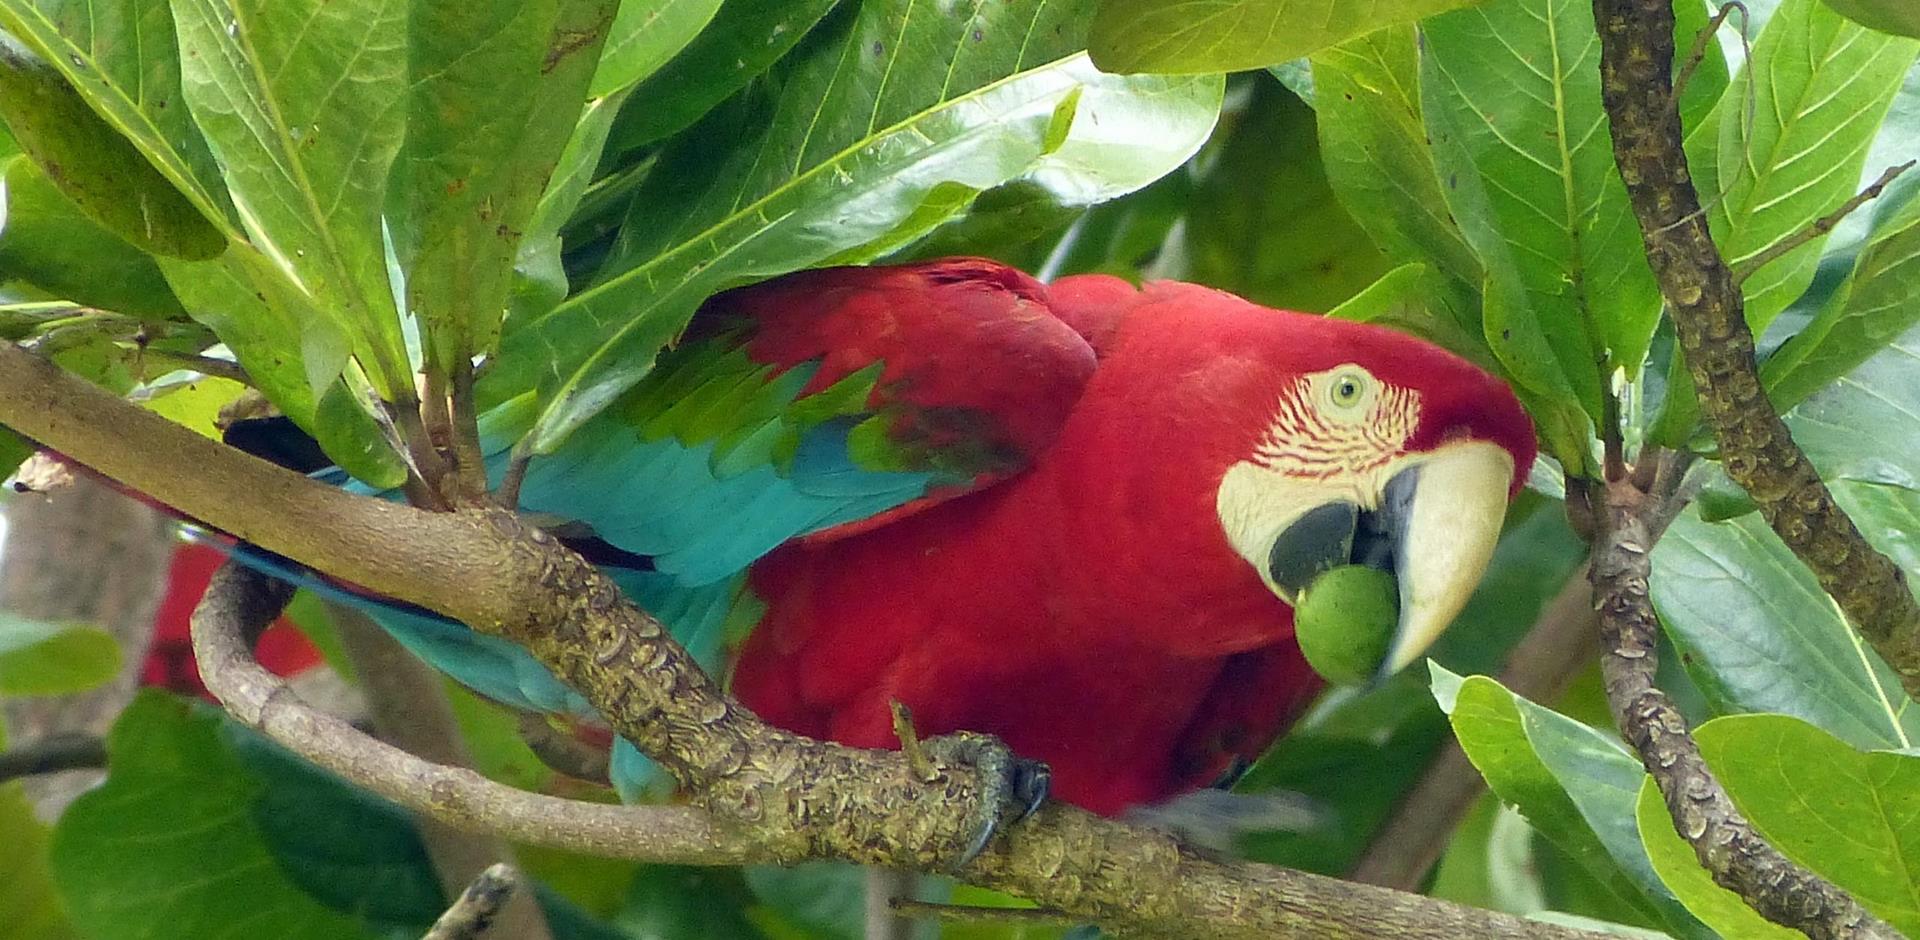 Macaw, the Pantanal